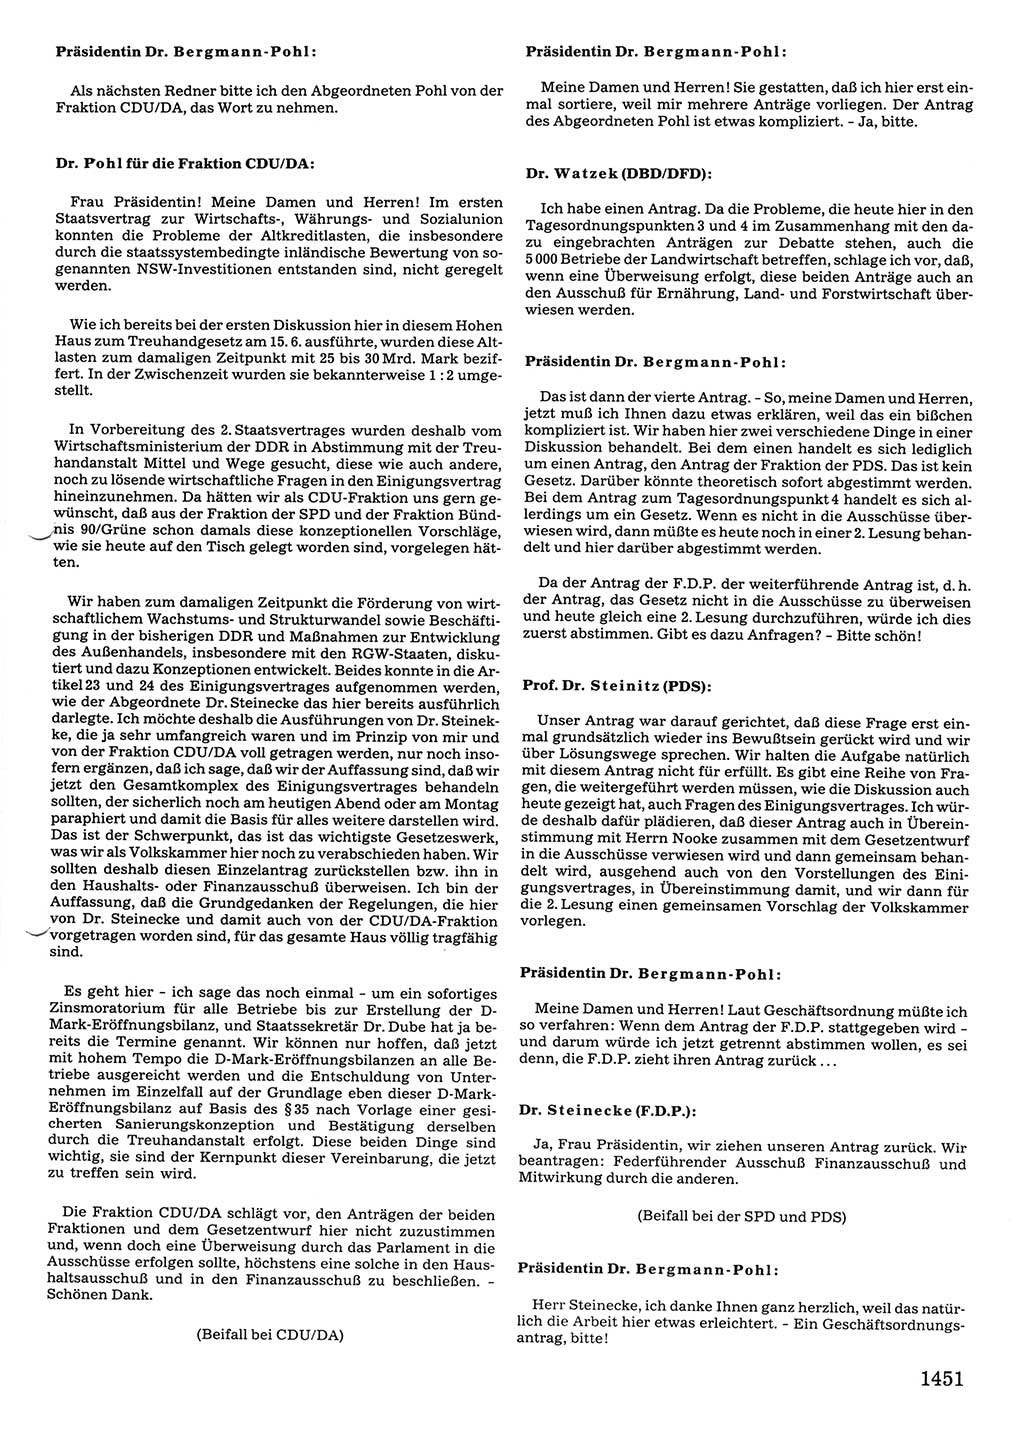 Tagungen der Volkskammer (VK) der Deutschen Demokratischen Republik (DDR), 10. Wahlperiode 1990, Seite 1451 (VK. DDR 10. WP. 1990, Prot. Tg. 1-38, 5.4.-2.10.1990, S. 1451)